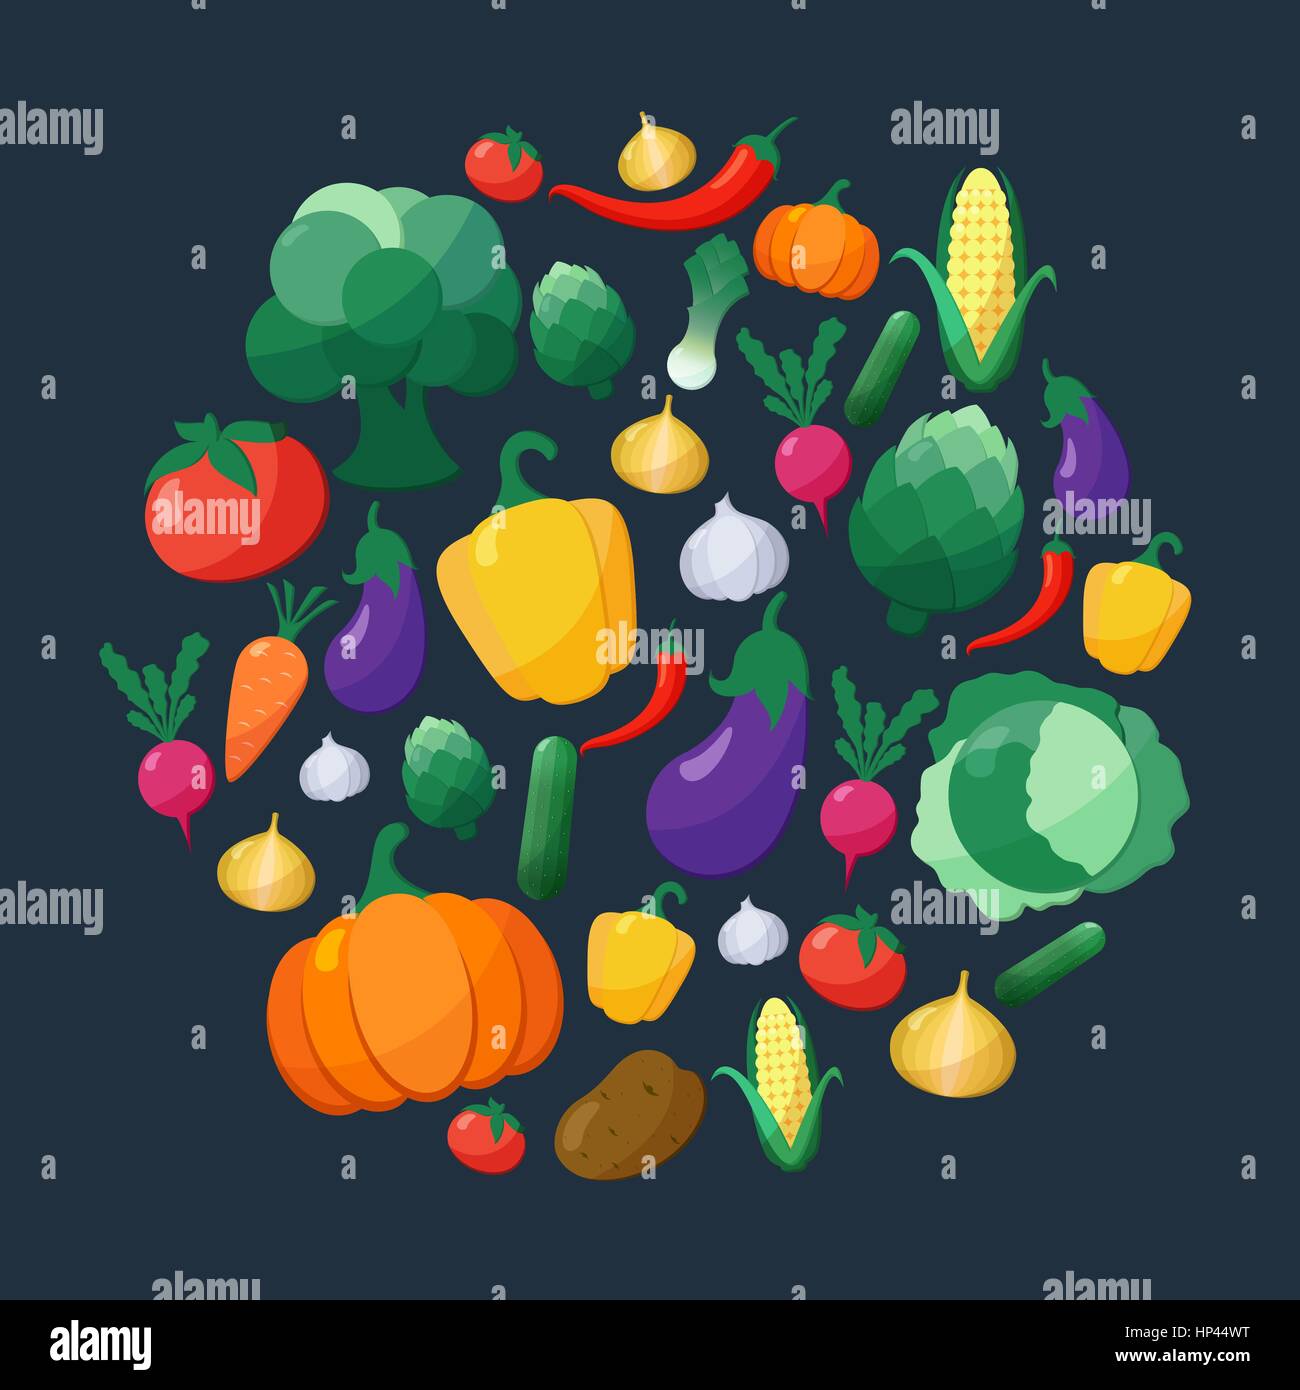 Vector Icons Set Style plat de légumes en forme de cercle sur fond sombre à l'aubergine, la carotte, paprika, artichaut, maïs, radis, potiron, pomme de terre, Illustration de Vecteur